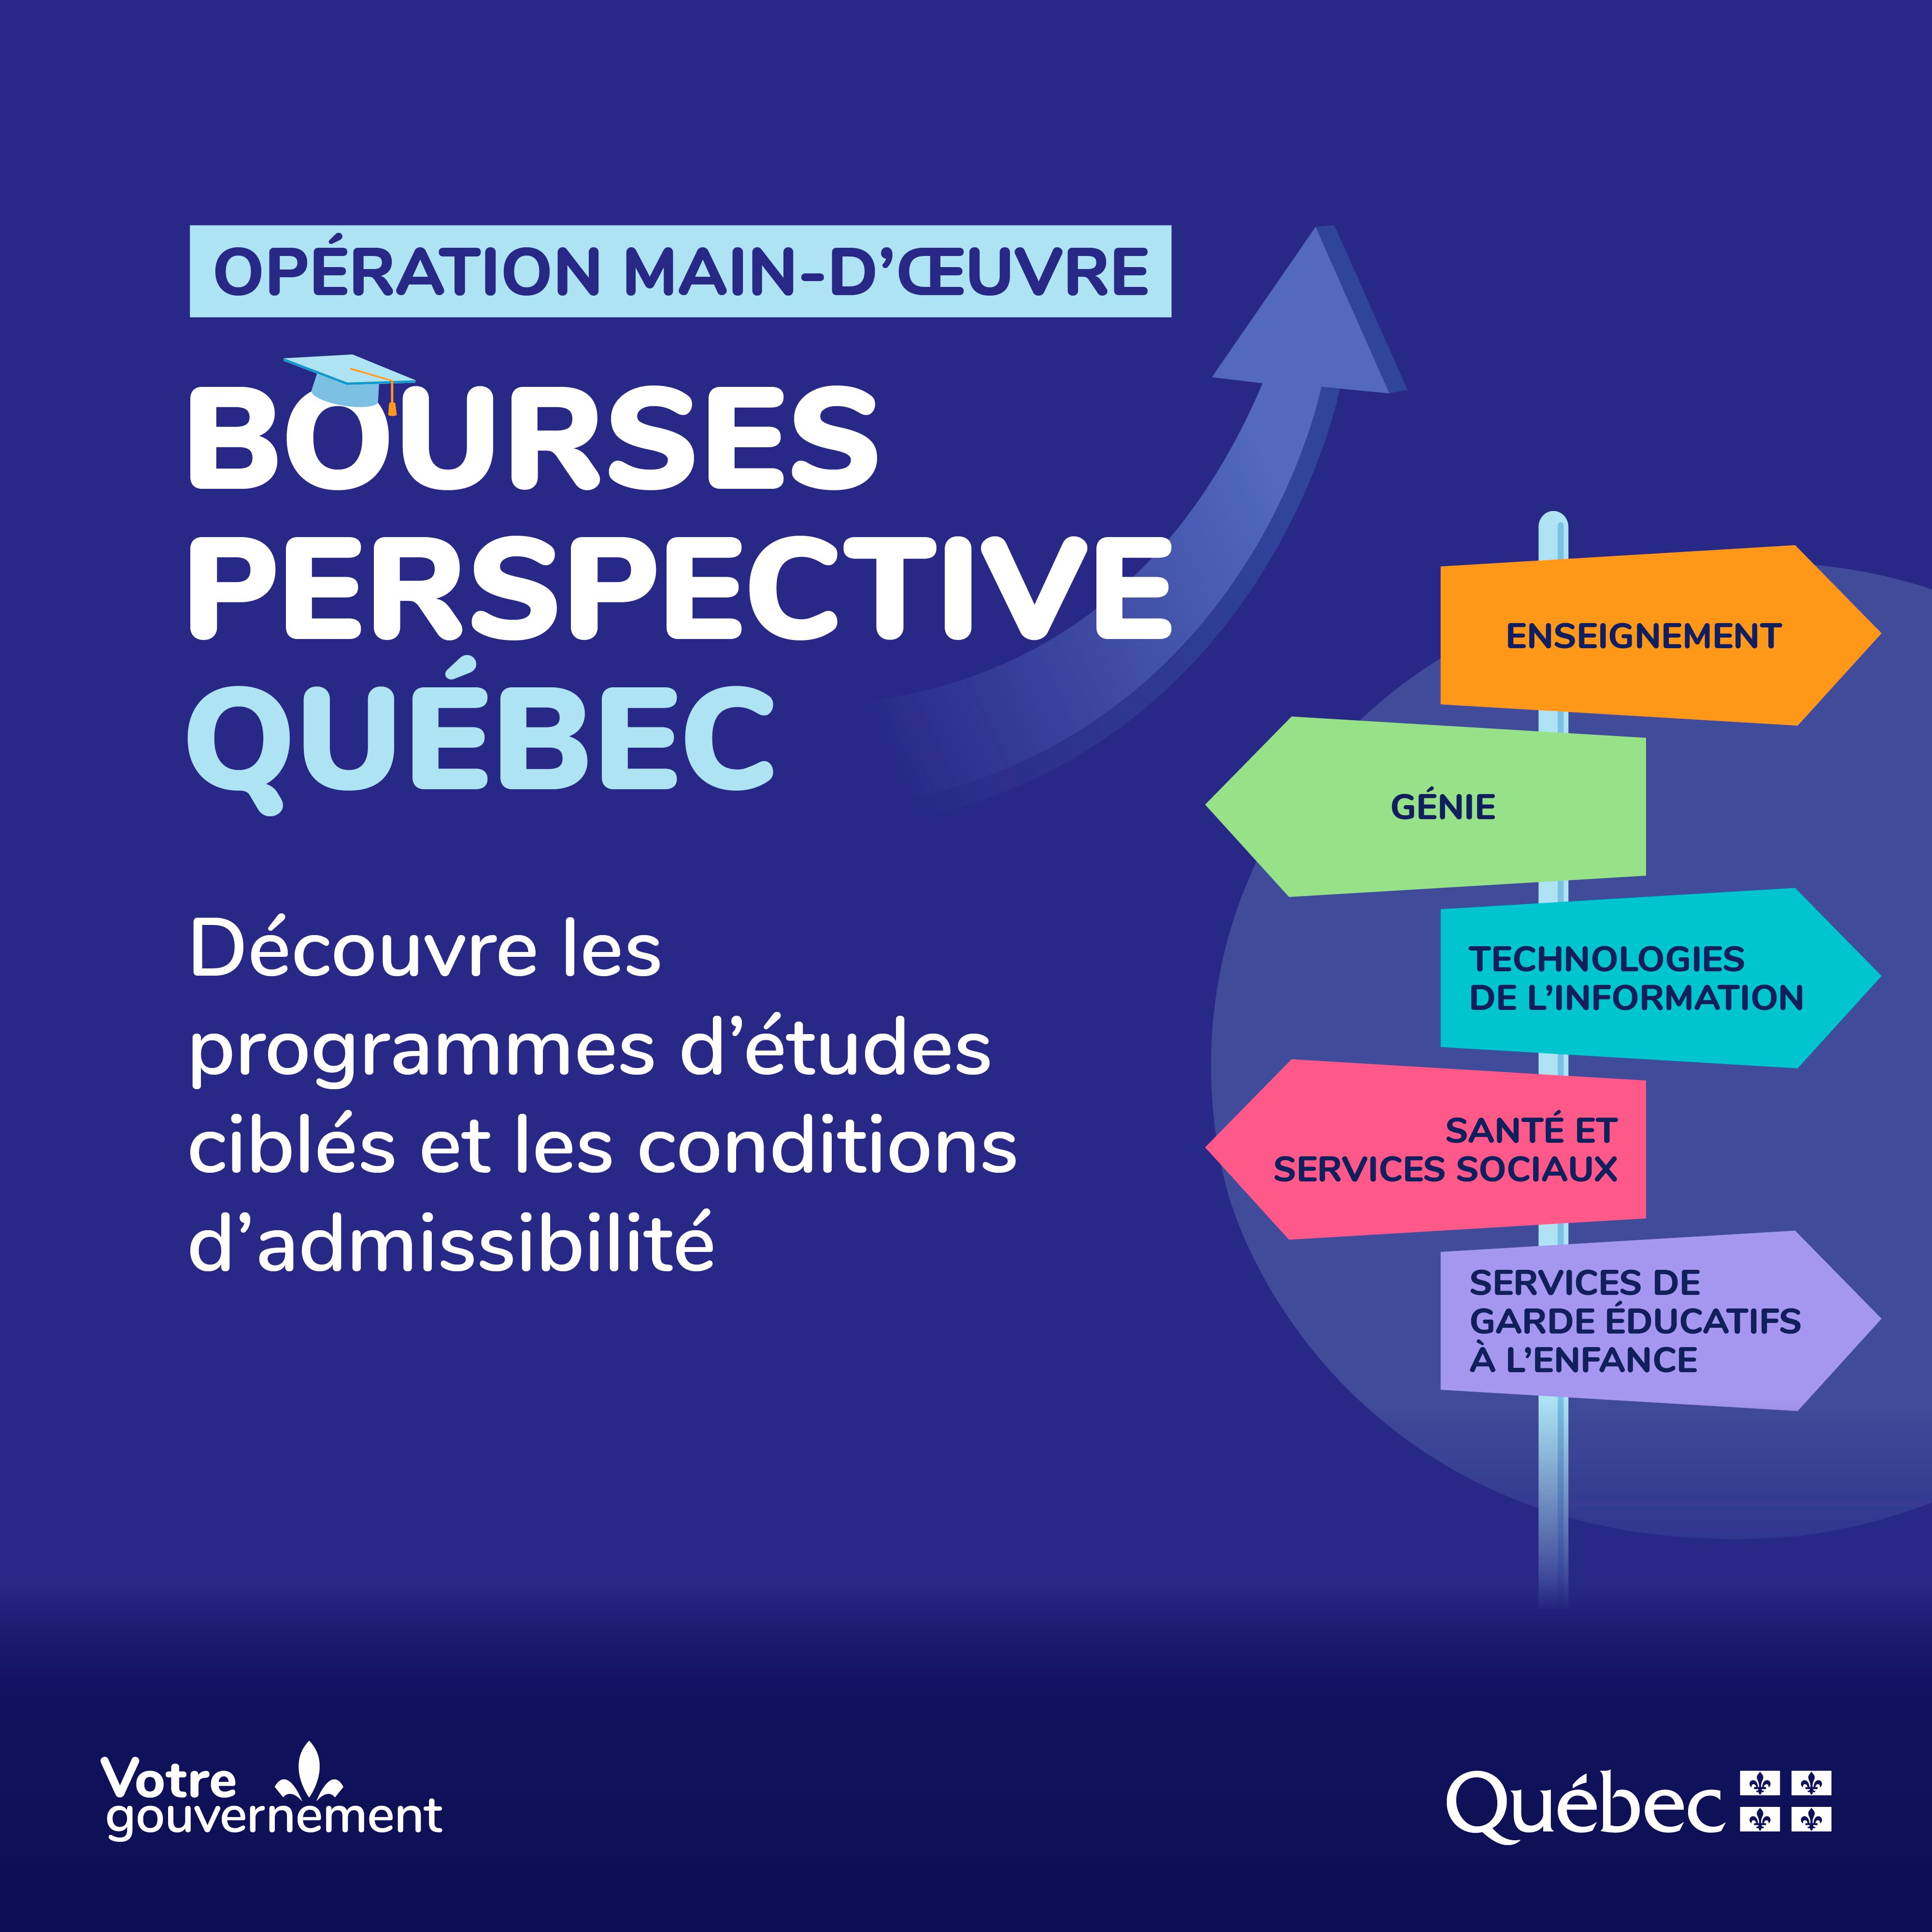 panneau indiquant les secteurs dans lesquels sont remis les bourses Perspective Québec : génie, technologies de l'information, santé